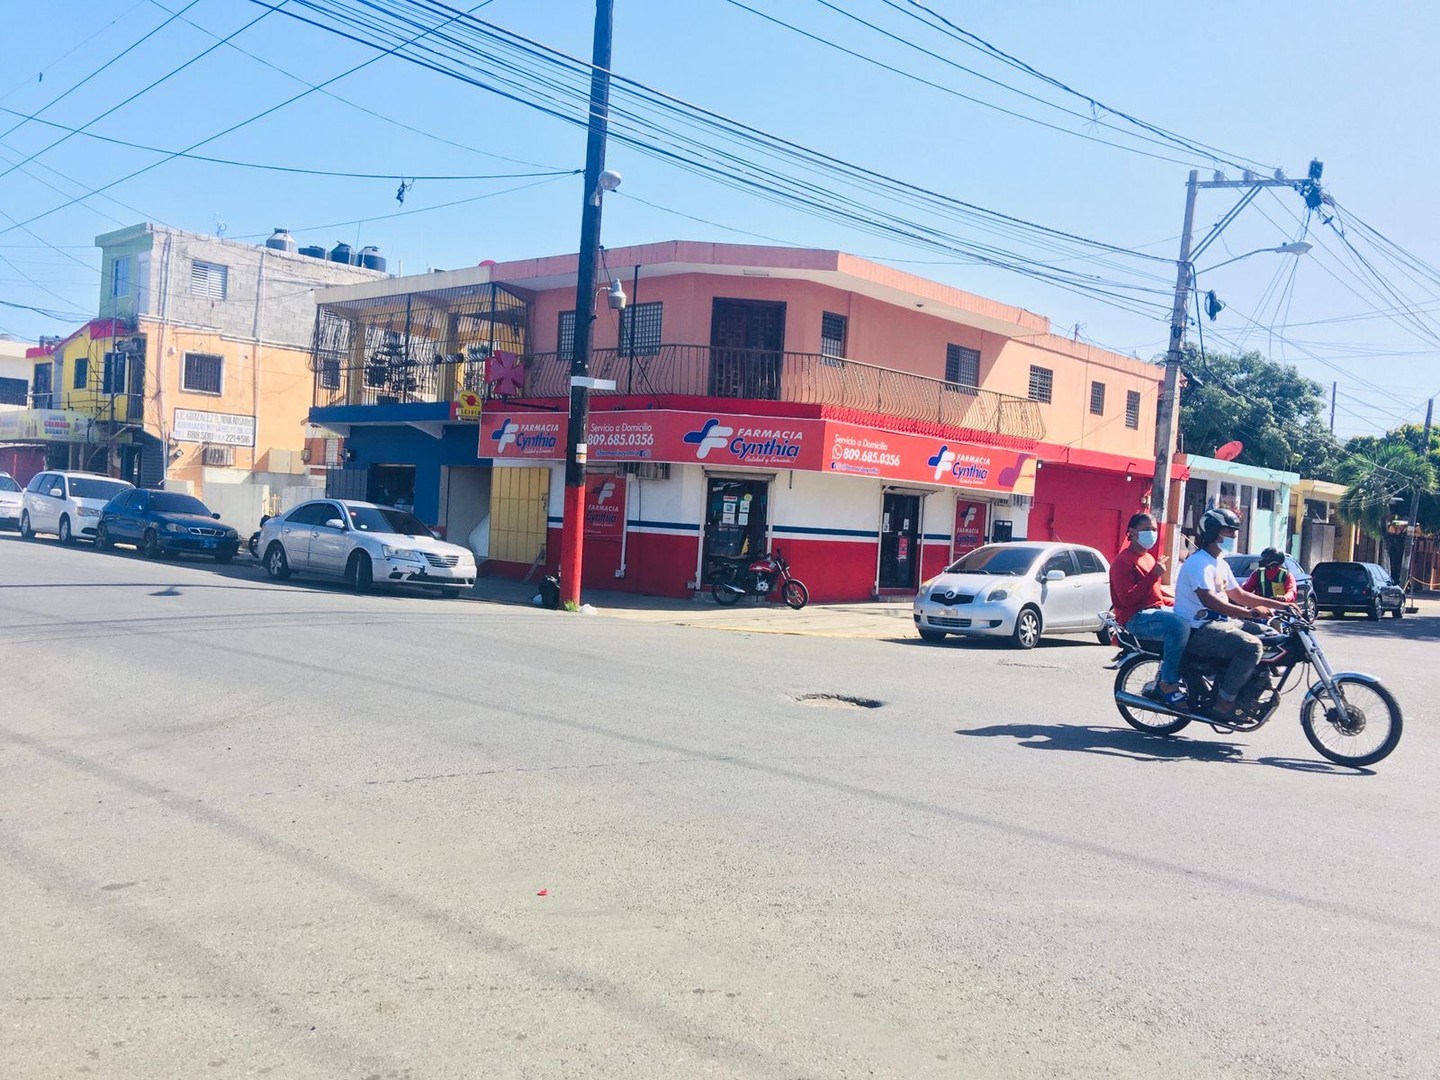 oficinas y locales comerciales - Local comercial en la Yolanda Guzman esquina domingo moreno Jimenez 📍